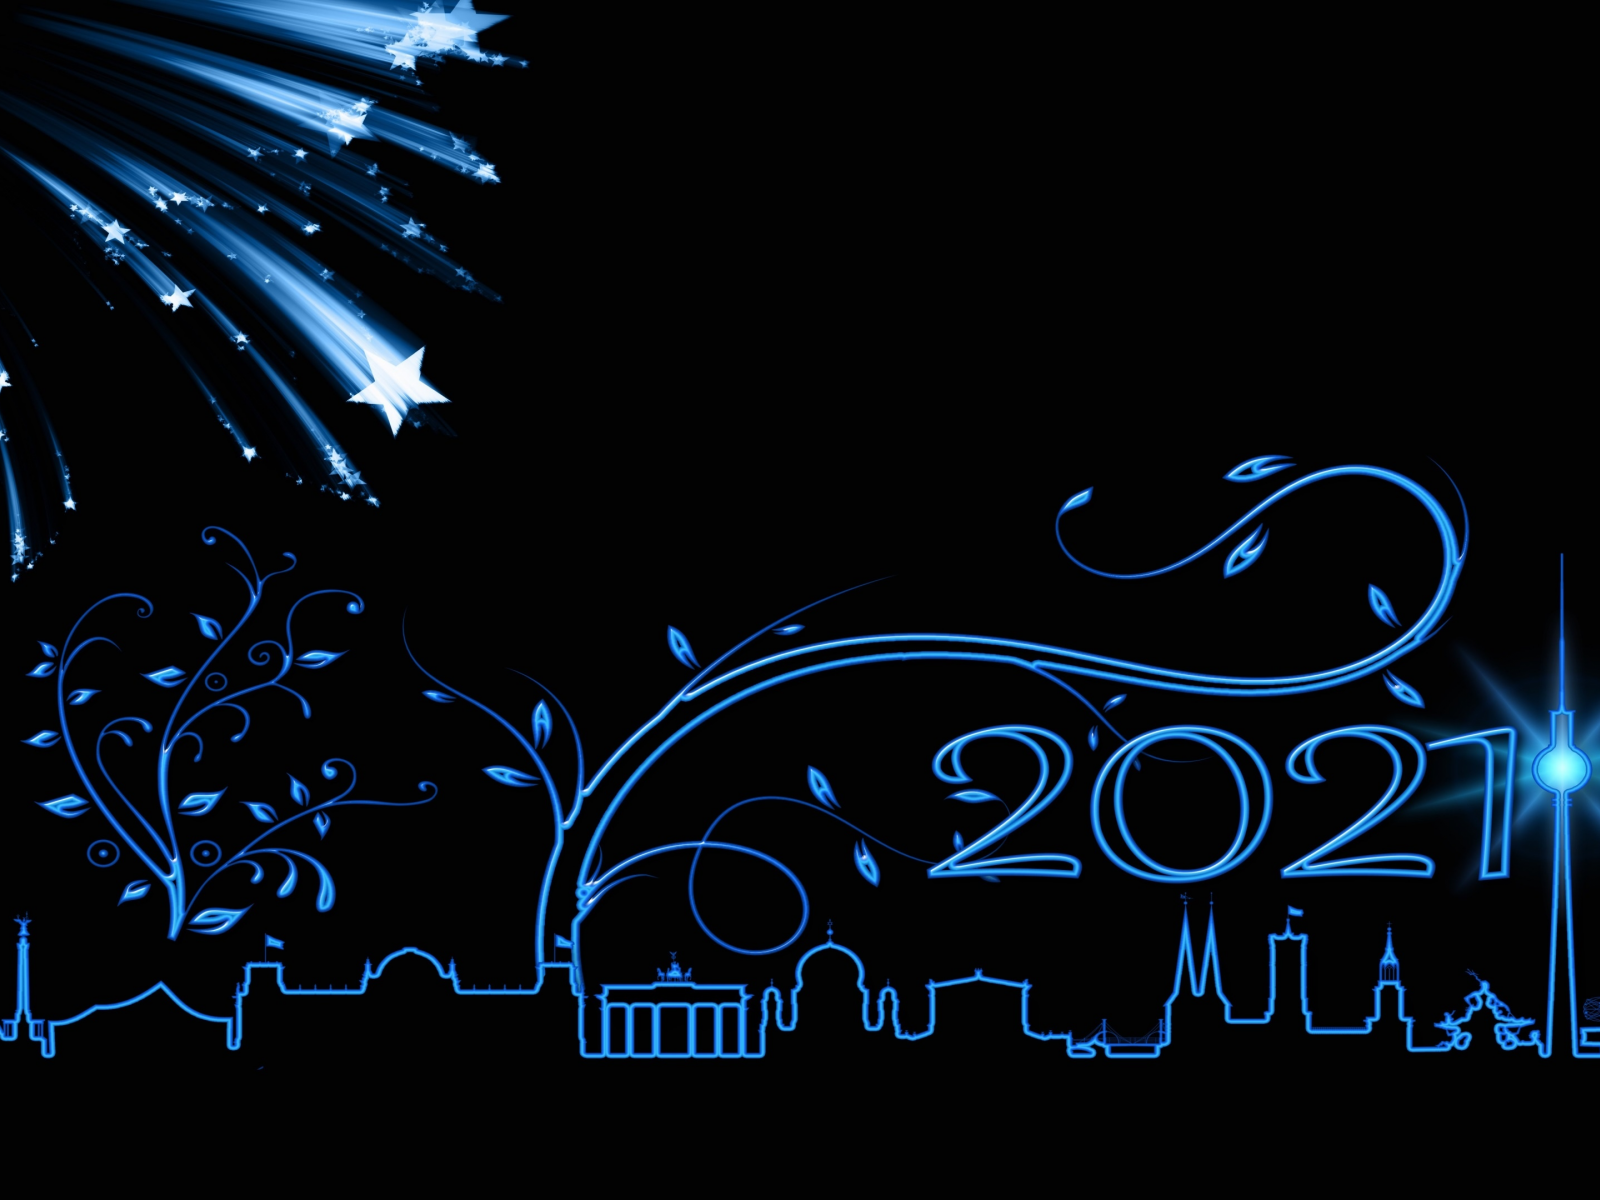 праздник, новый год 2021